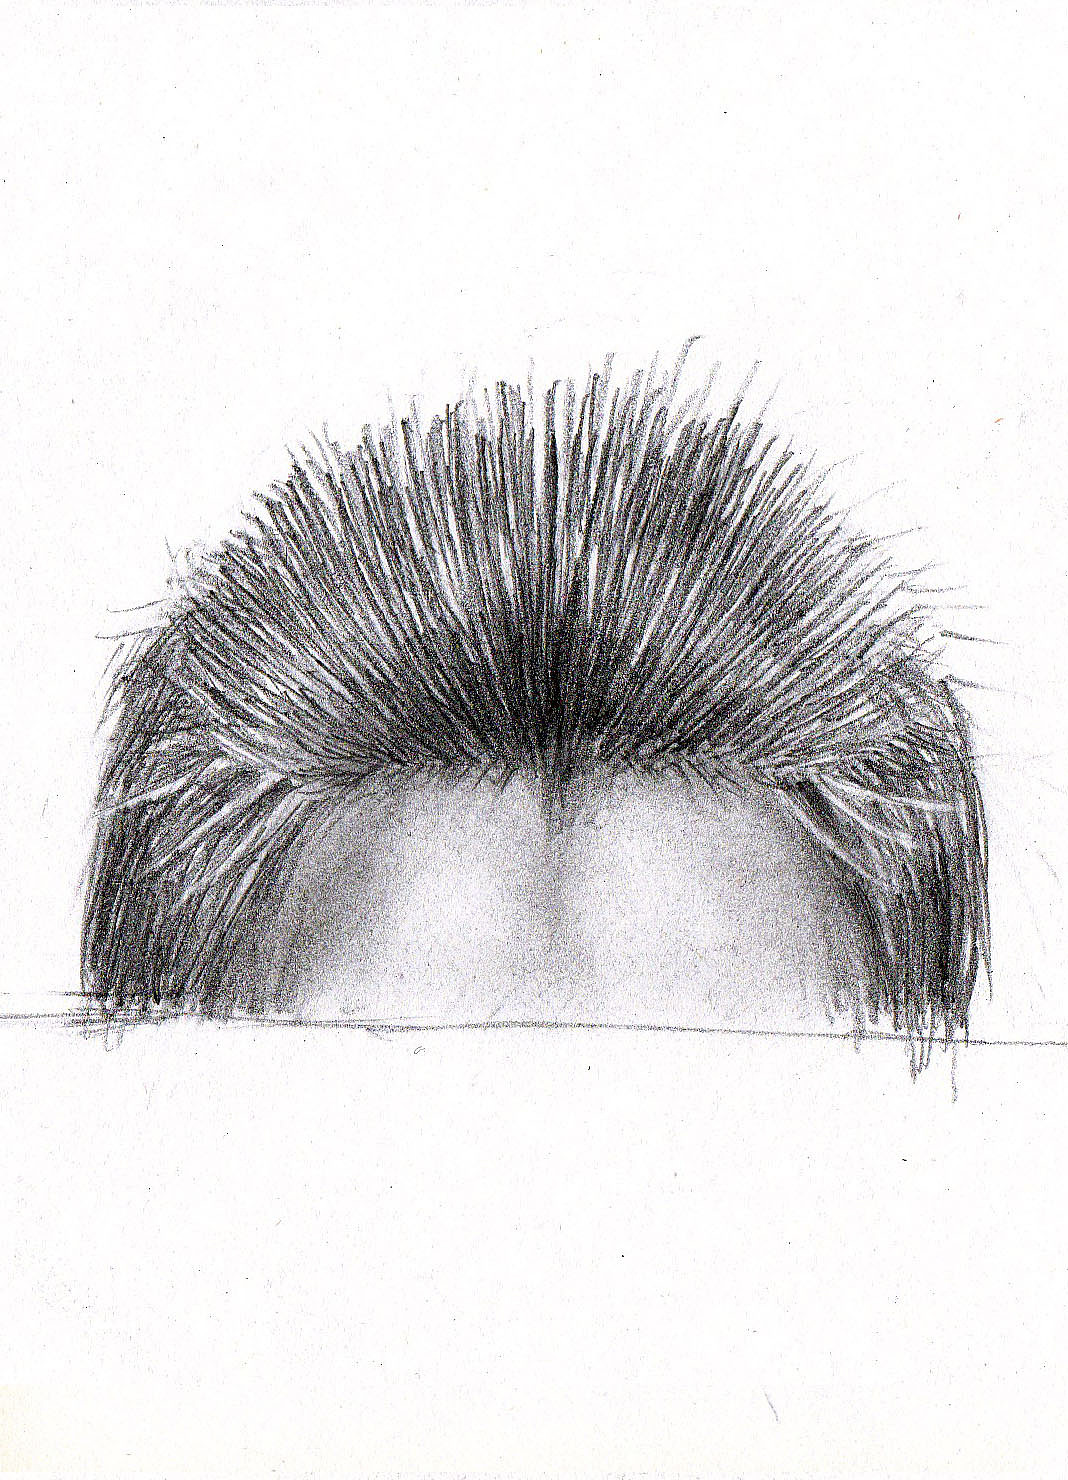 铅笔-素描人像-男性发型结构和层次图文教程- 虎课网